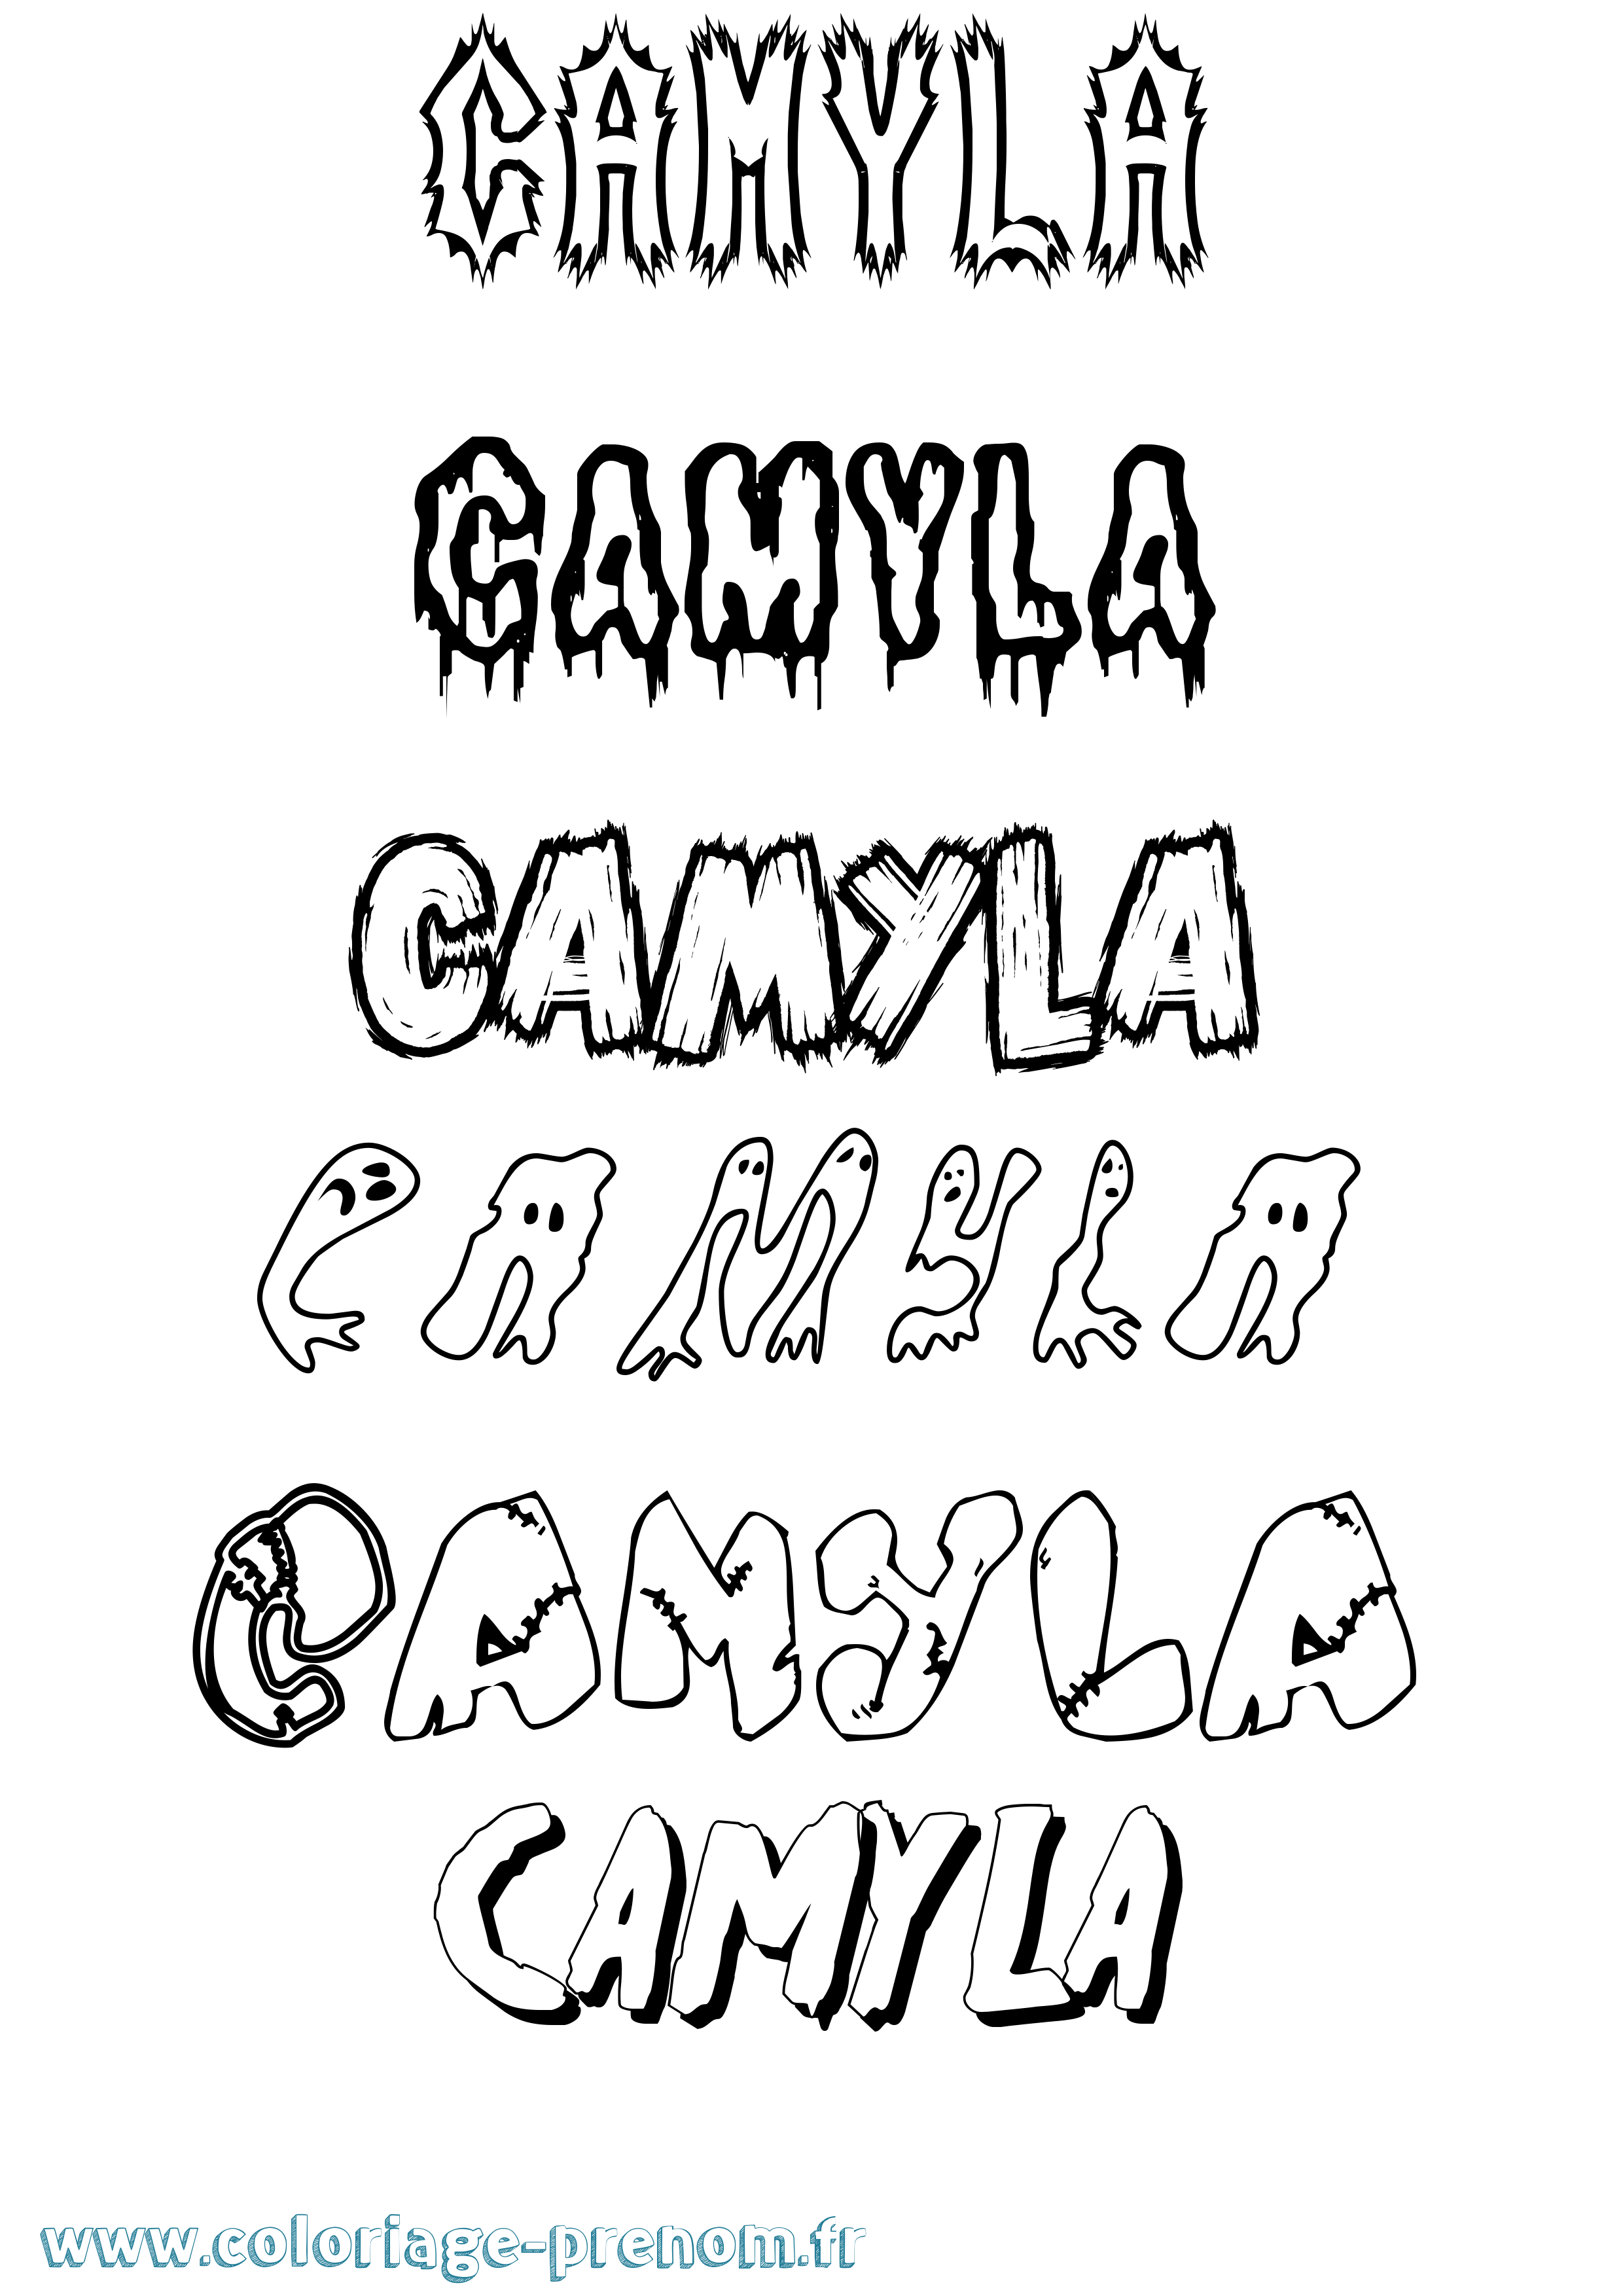 Coloriage prénom Camyla Frisson